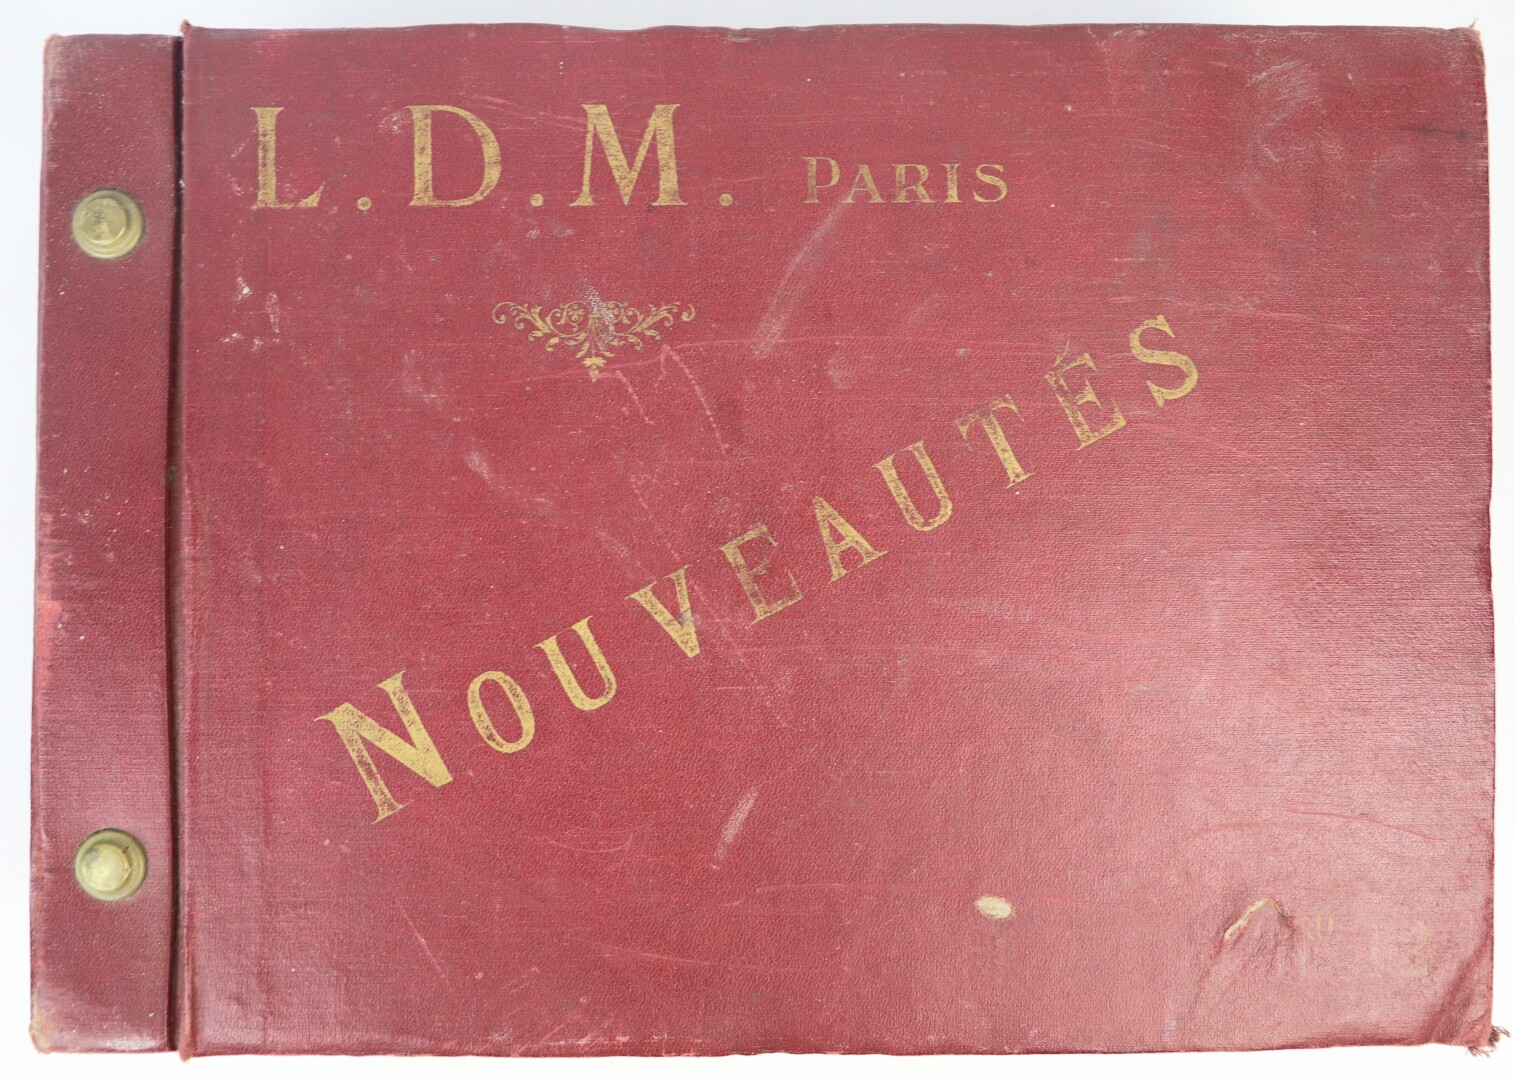 La Décoration Moderne (L.D.M.). - Manufacture de papiers peints. - Nouveautés [...] - Image 2 of 6